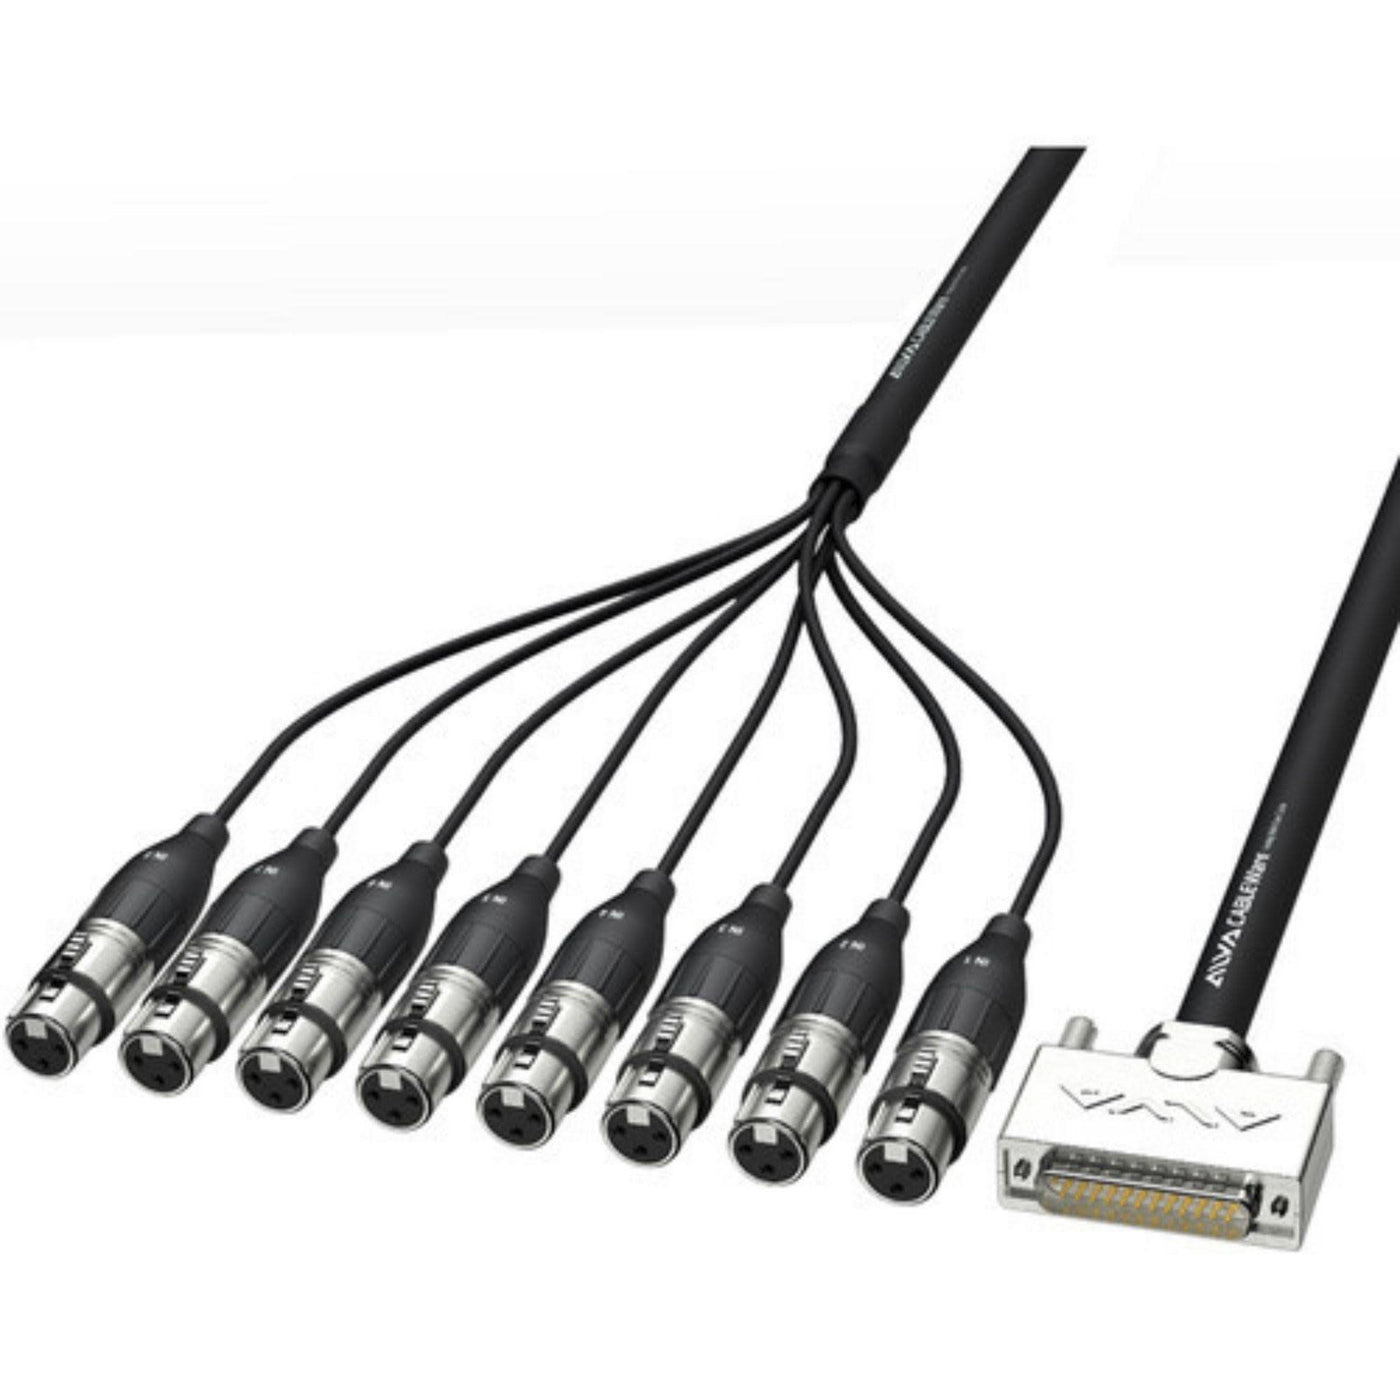 Alva AI25-8XPRO10 Analog Multi-Core Cable, D-sub25 Male to XLR-3 Female, 10m